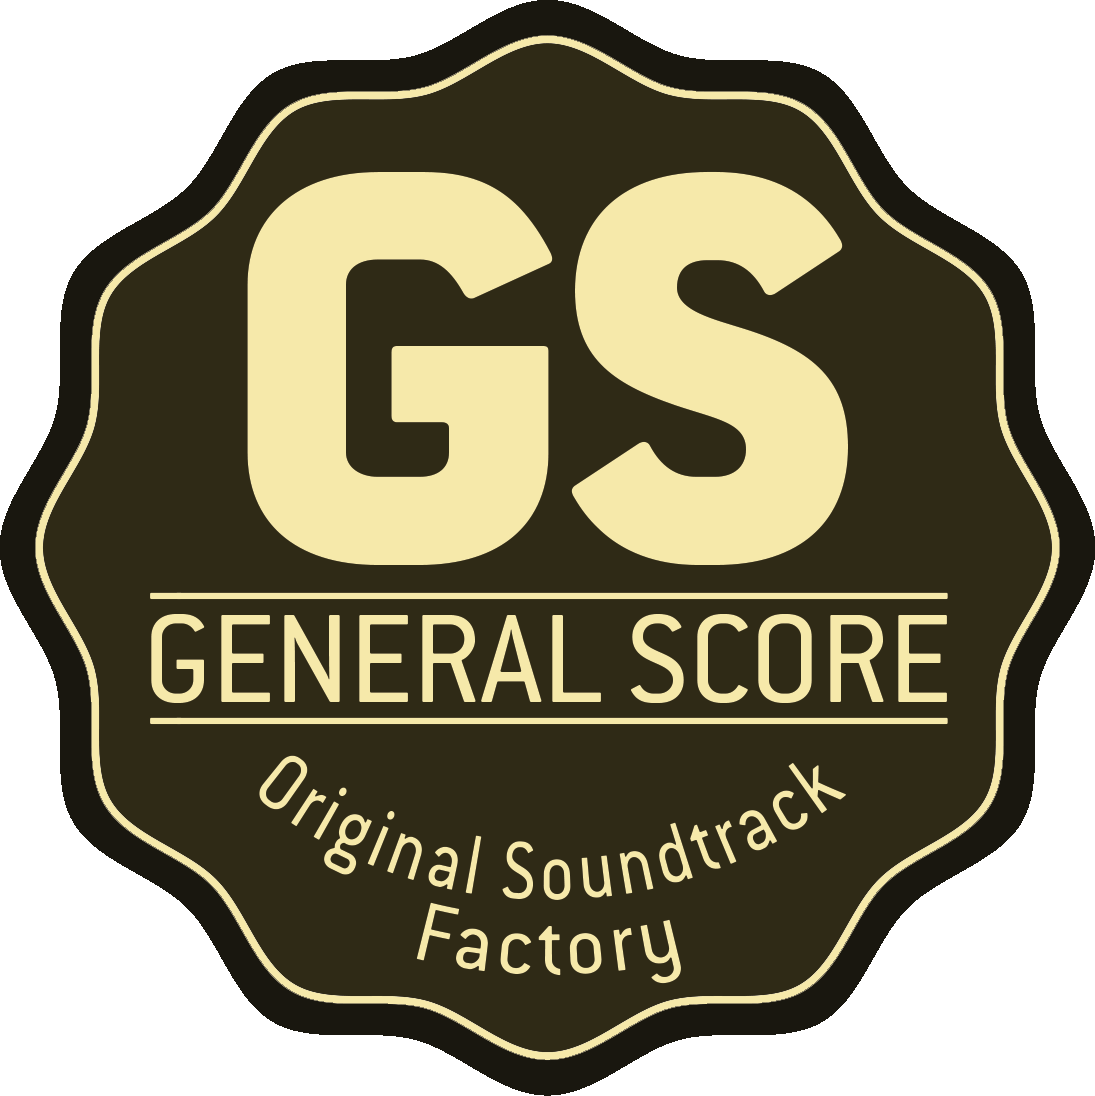 Ecouter La Musique Des Compositeurs - General Score (1095x1096), Png Download